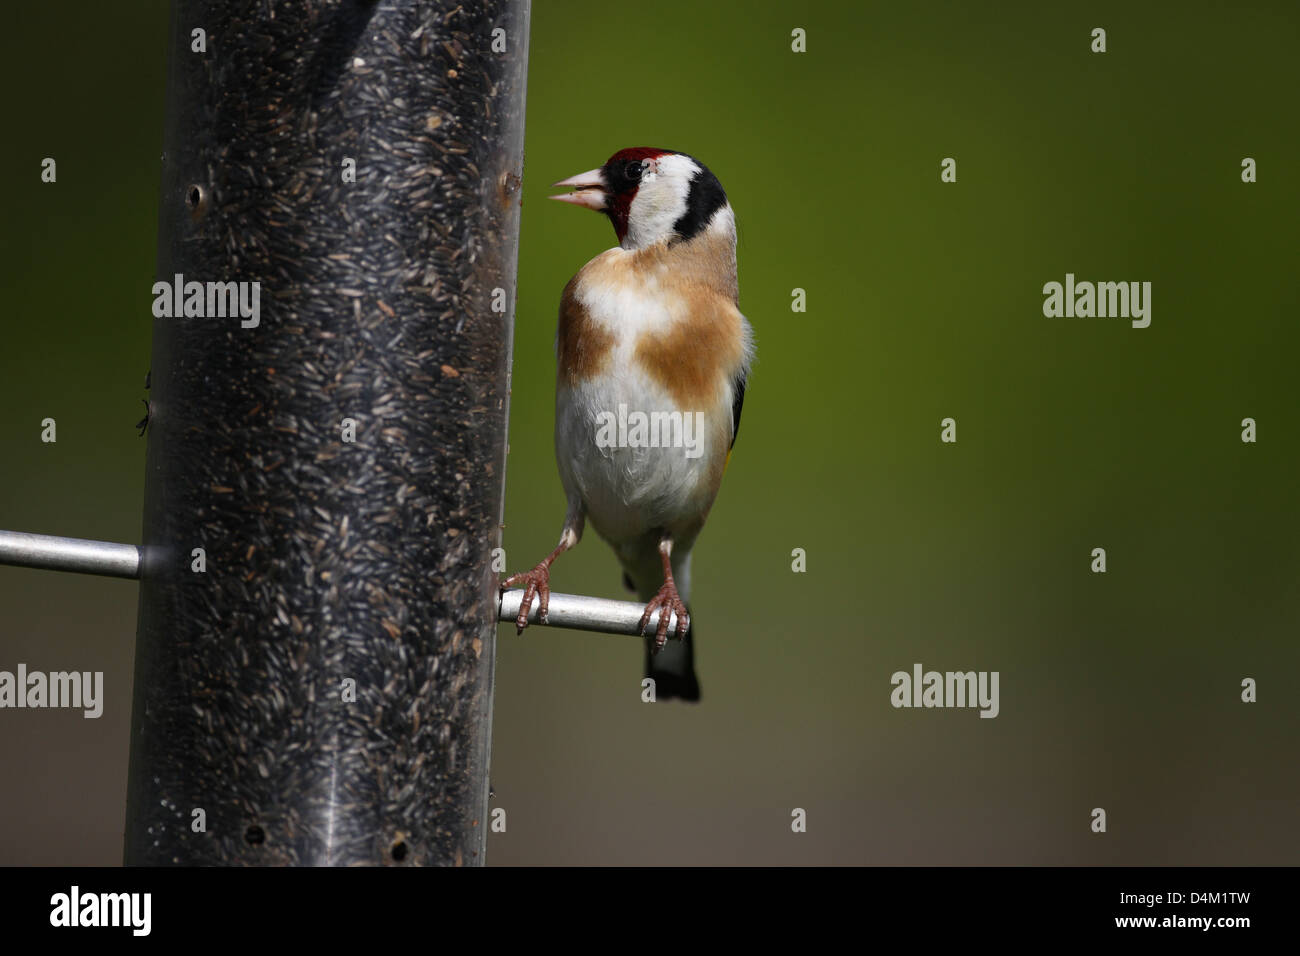 Goldfinch on bird feeder Stock Photo